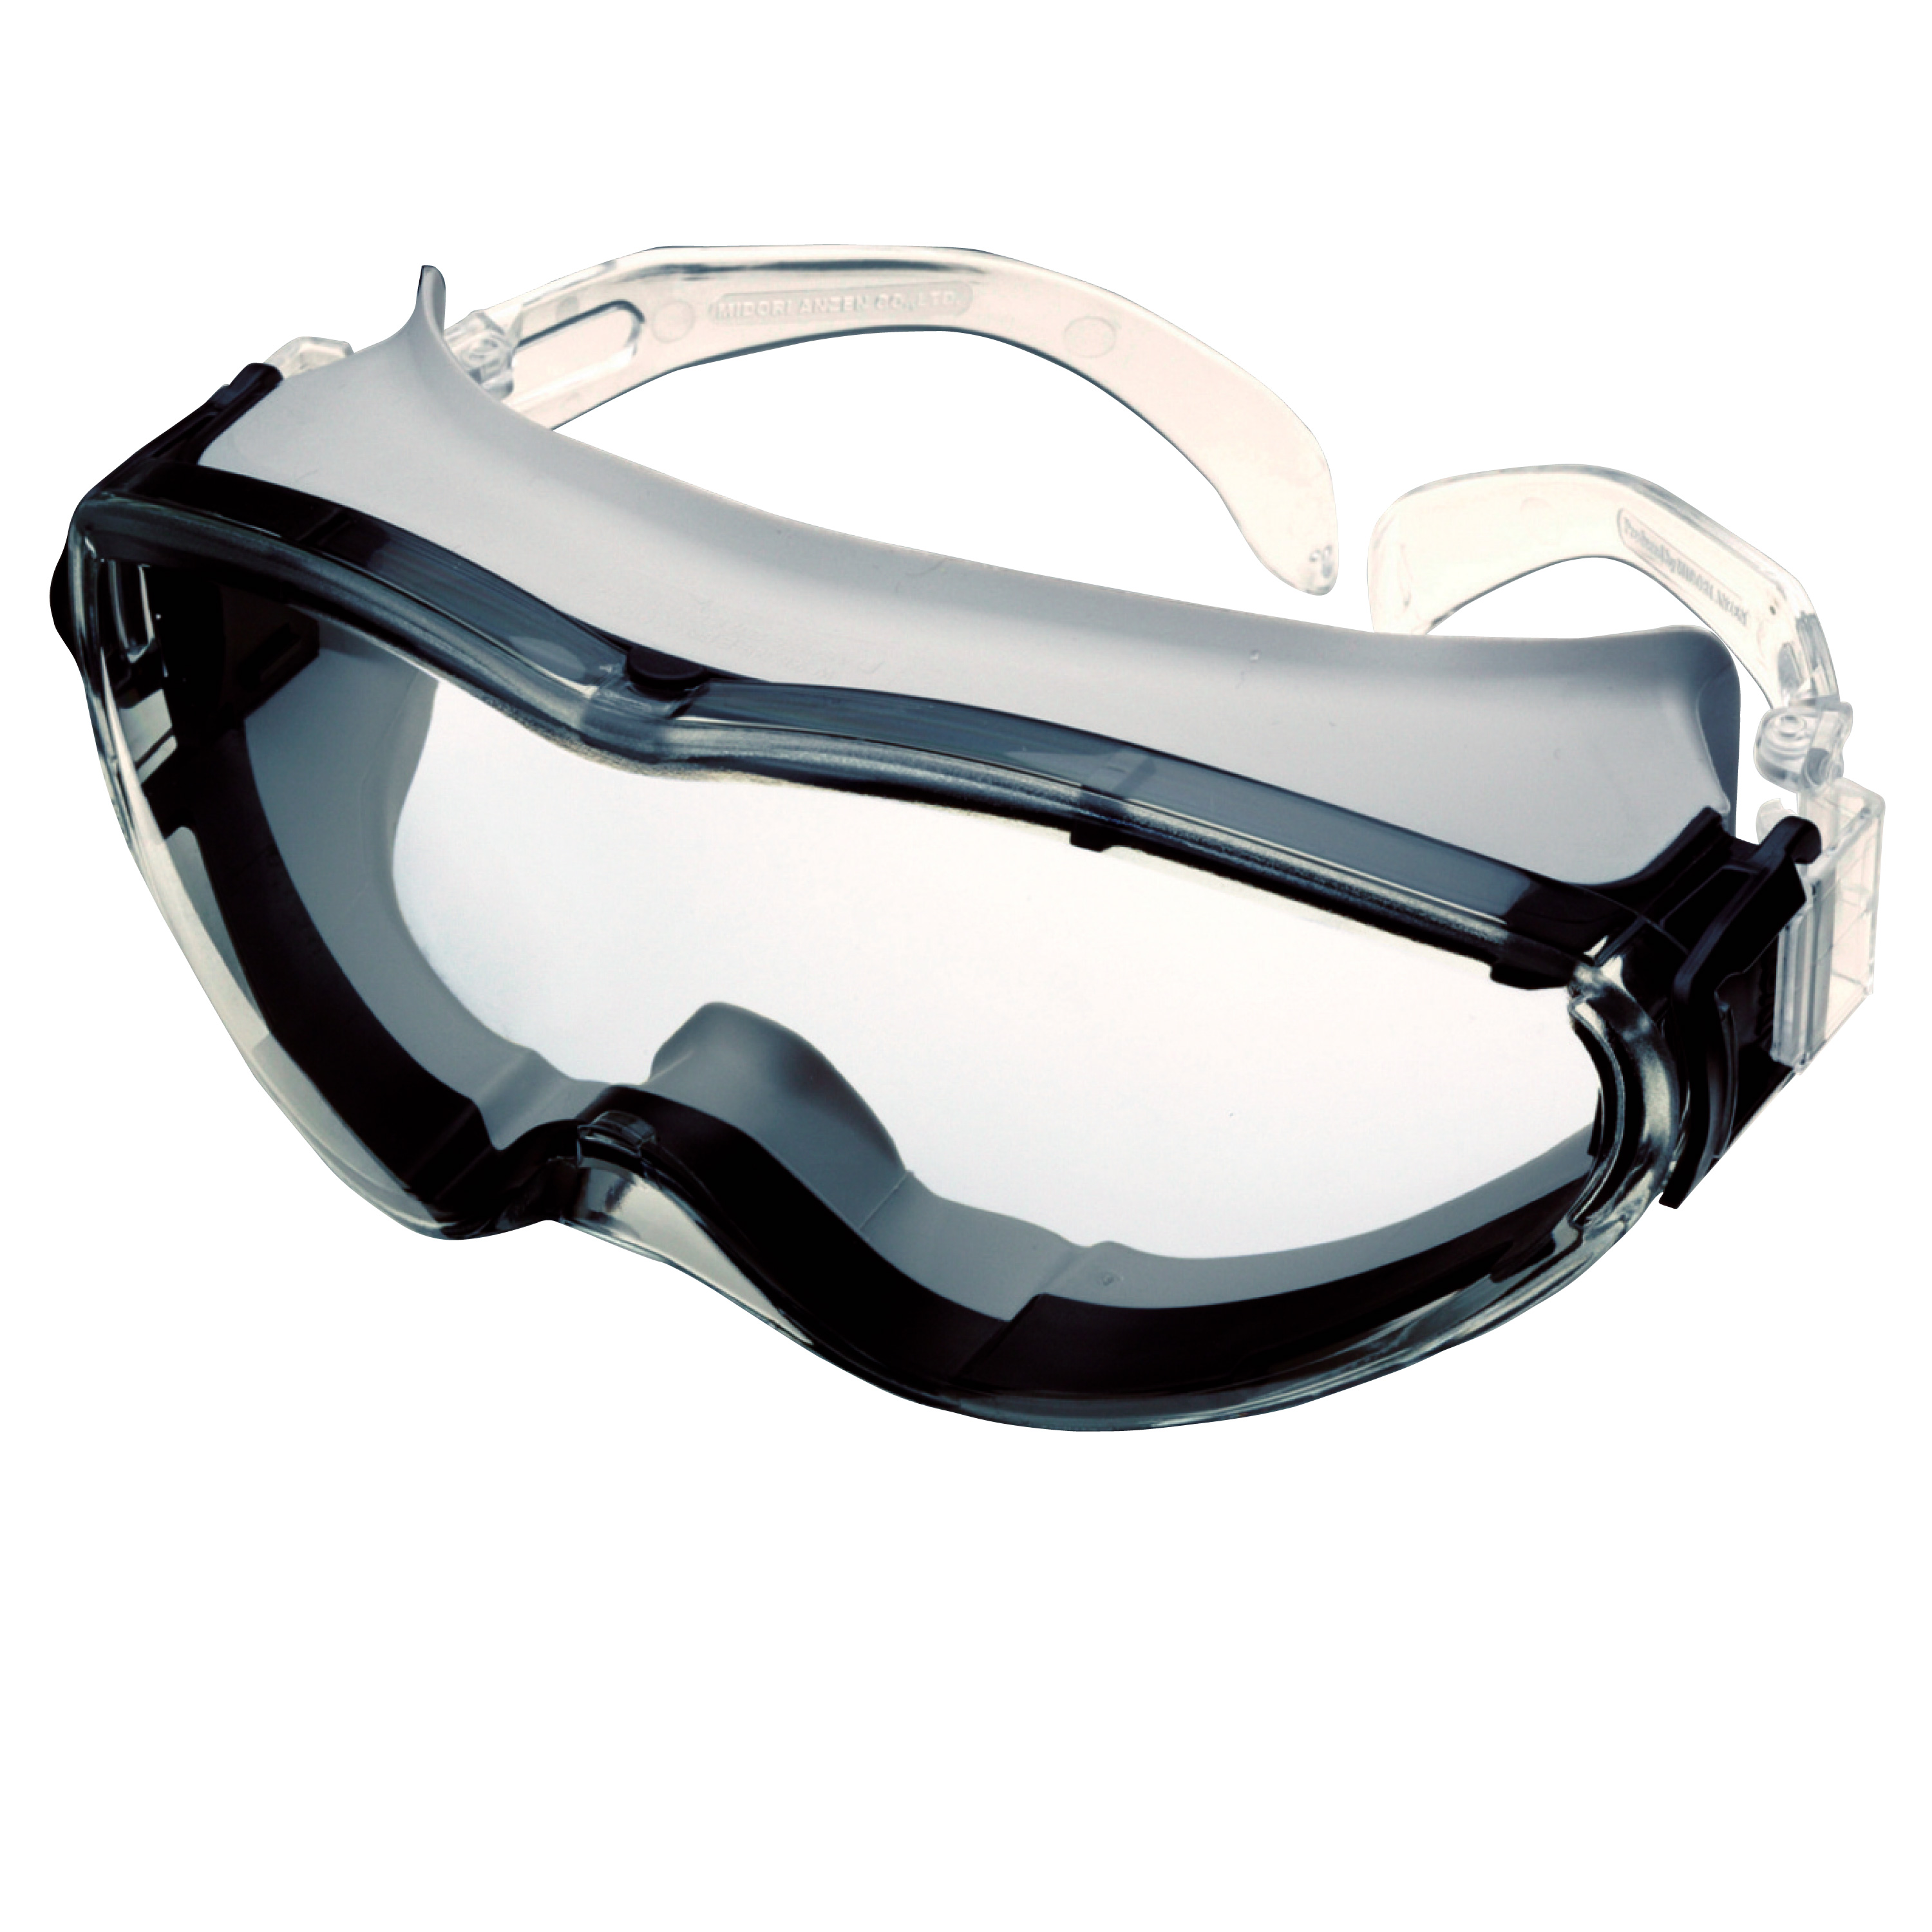 Goggles X-9302 gray